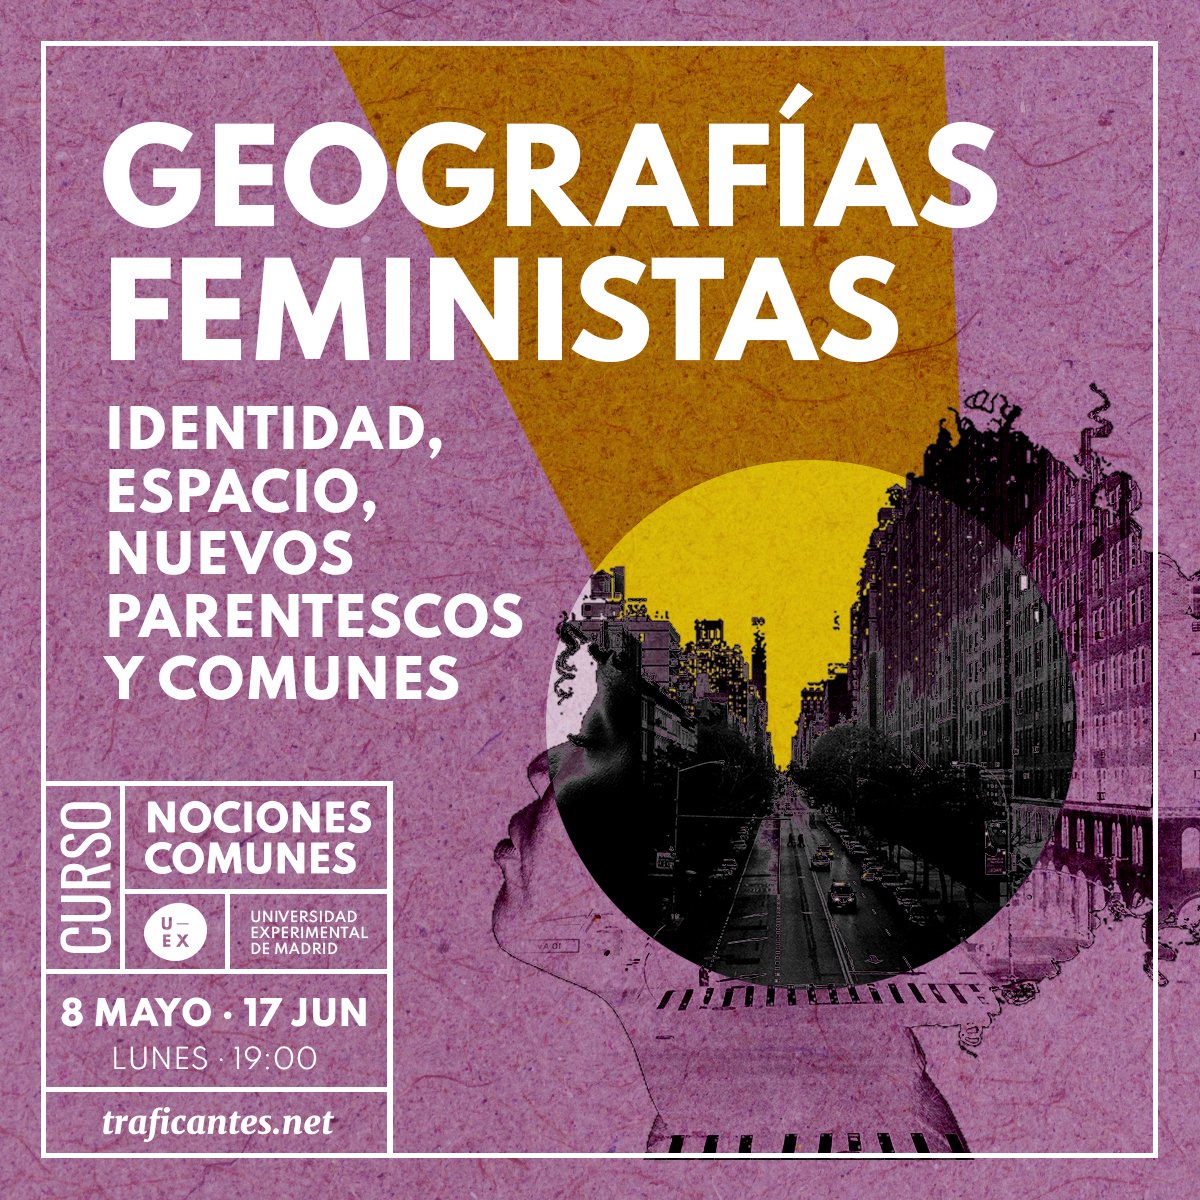 #HOY Charla abierta: Geografías Feministas. Con Raquel Gutiérrez Aguilar Lunes 13MAY 19hs @AteneoMaliciosa  @NocionesComunes   Identidad, espacio, nuevos parentescos y comunes. acortar.link/wMyFJy